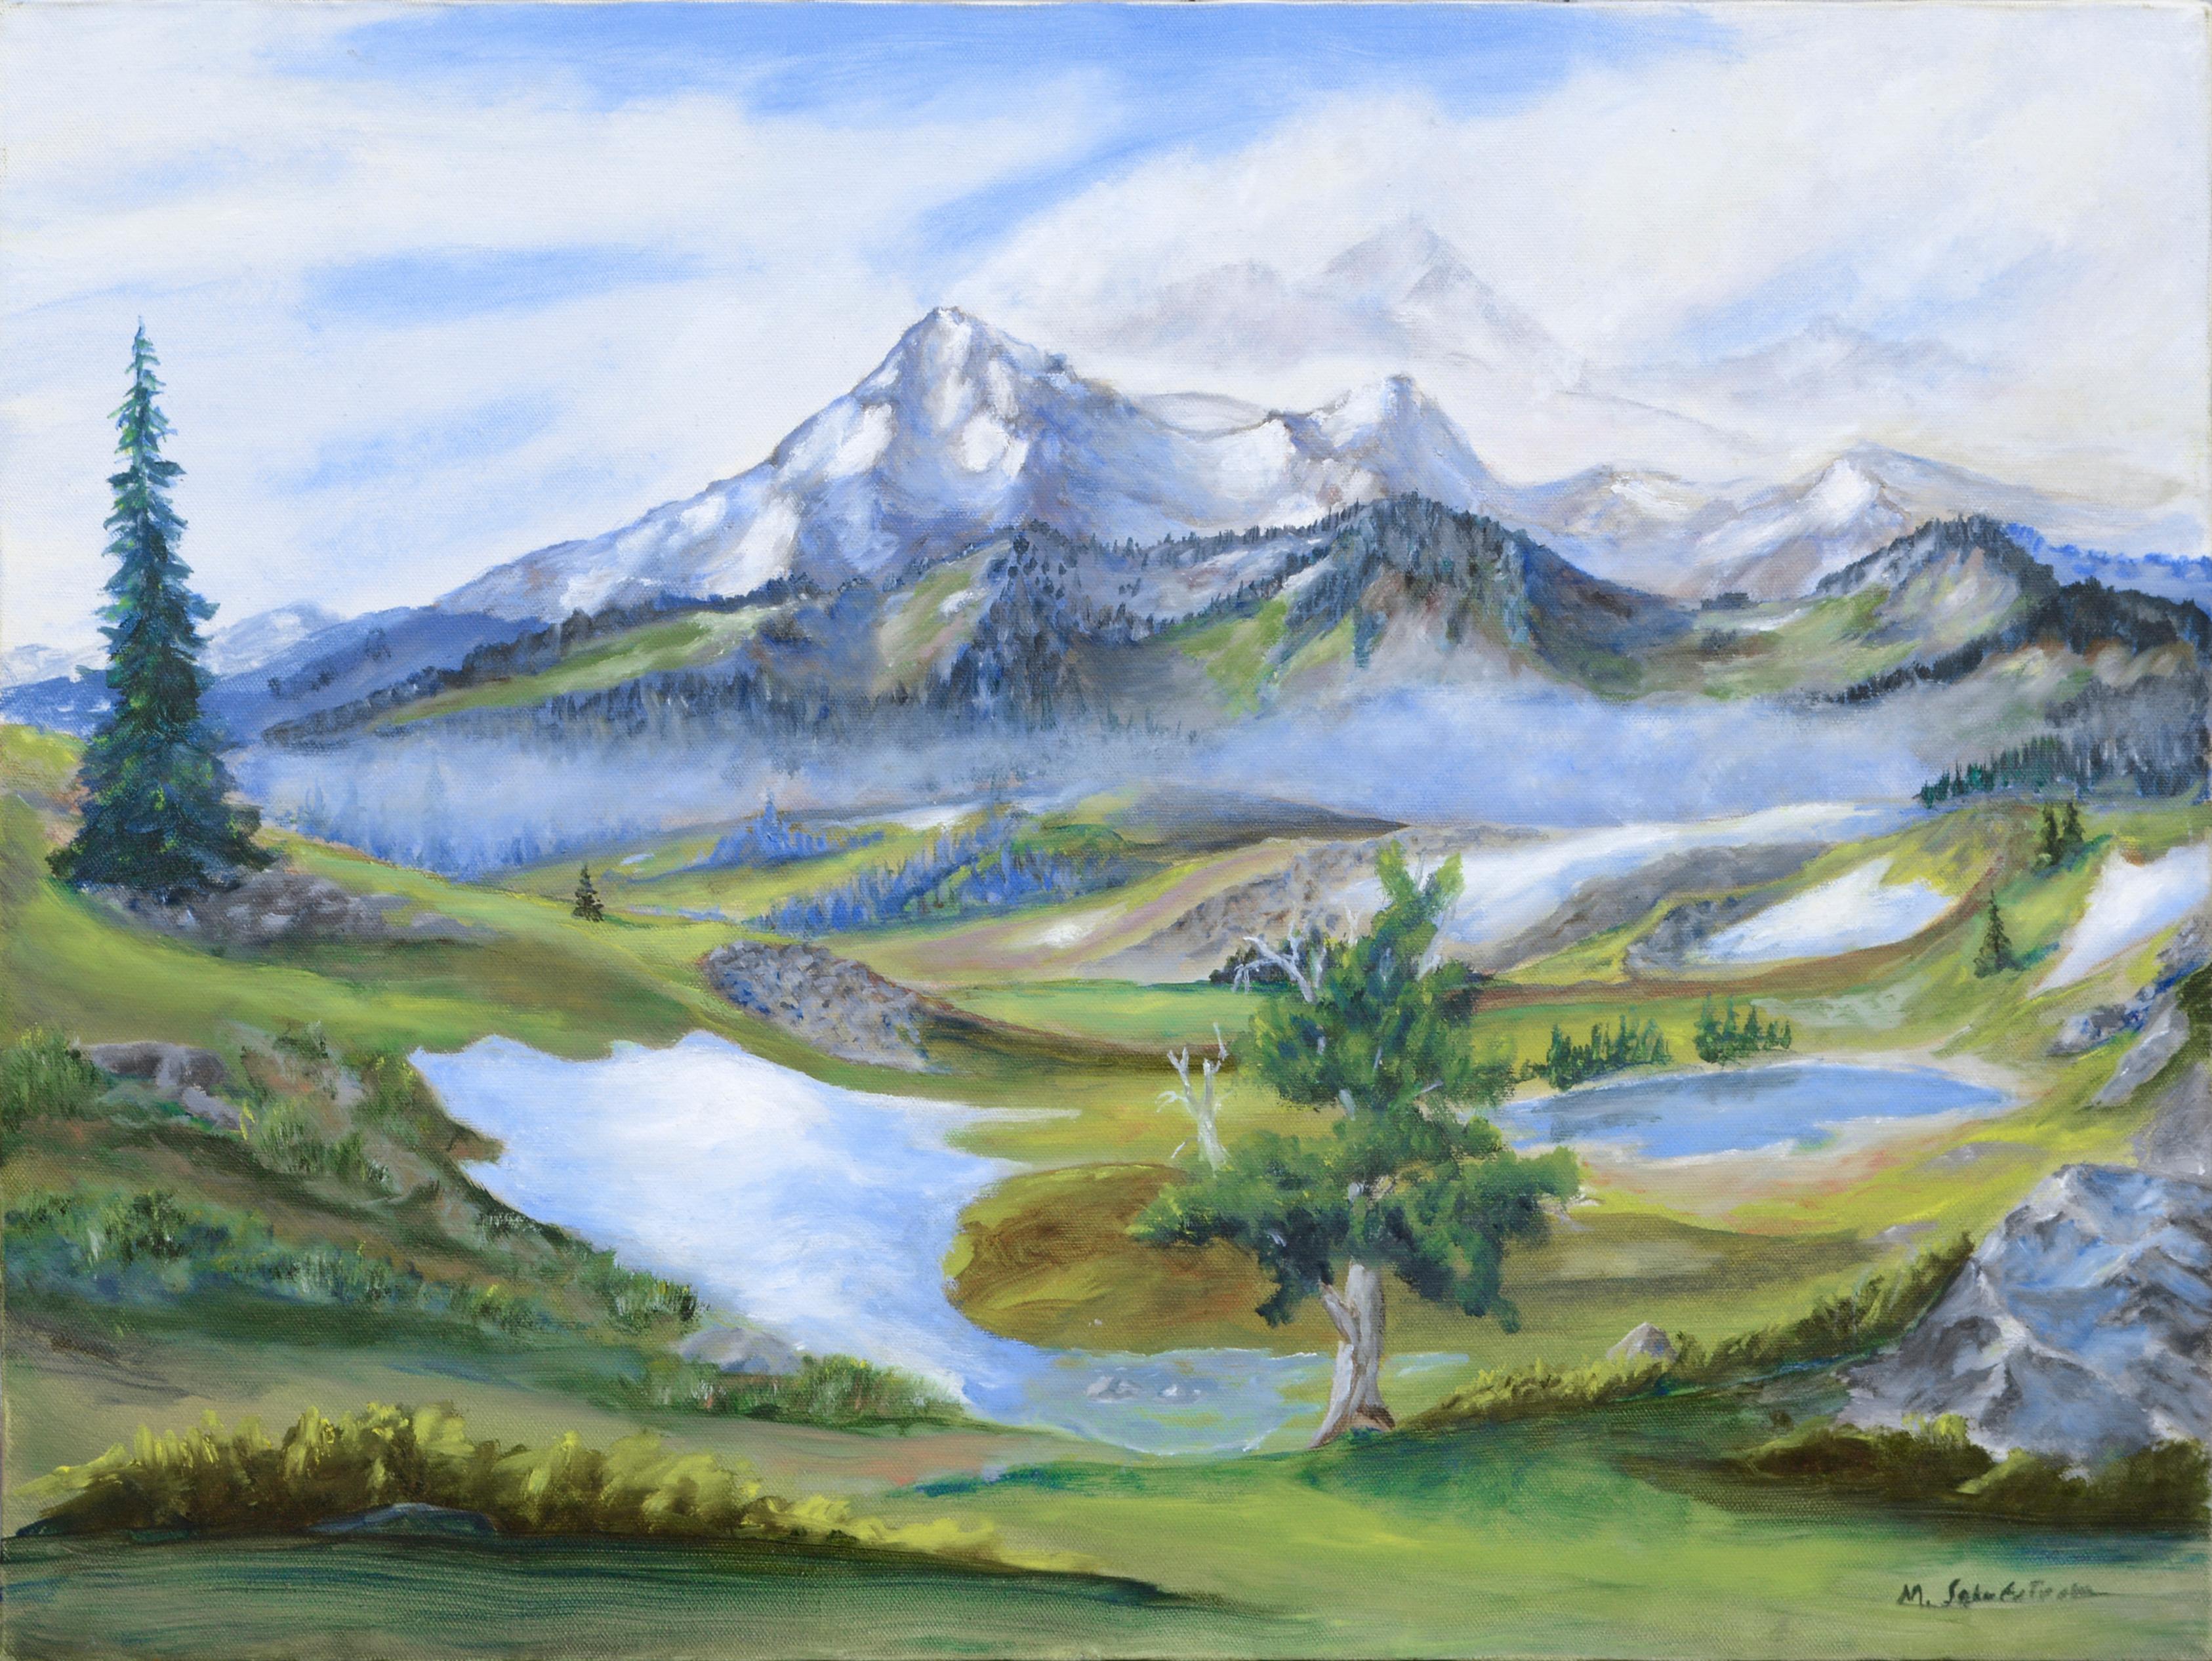 Martin Schefstrom Landscape Painting - "Alpine Summer" Landscape